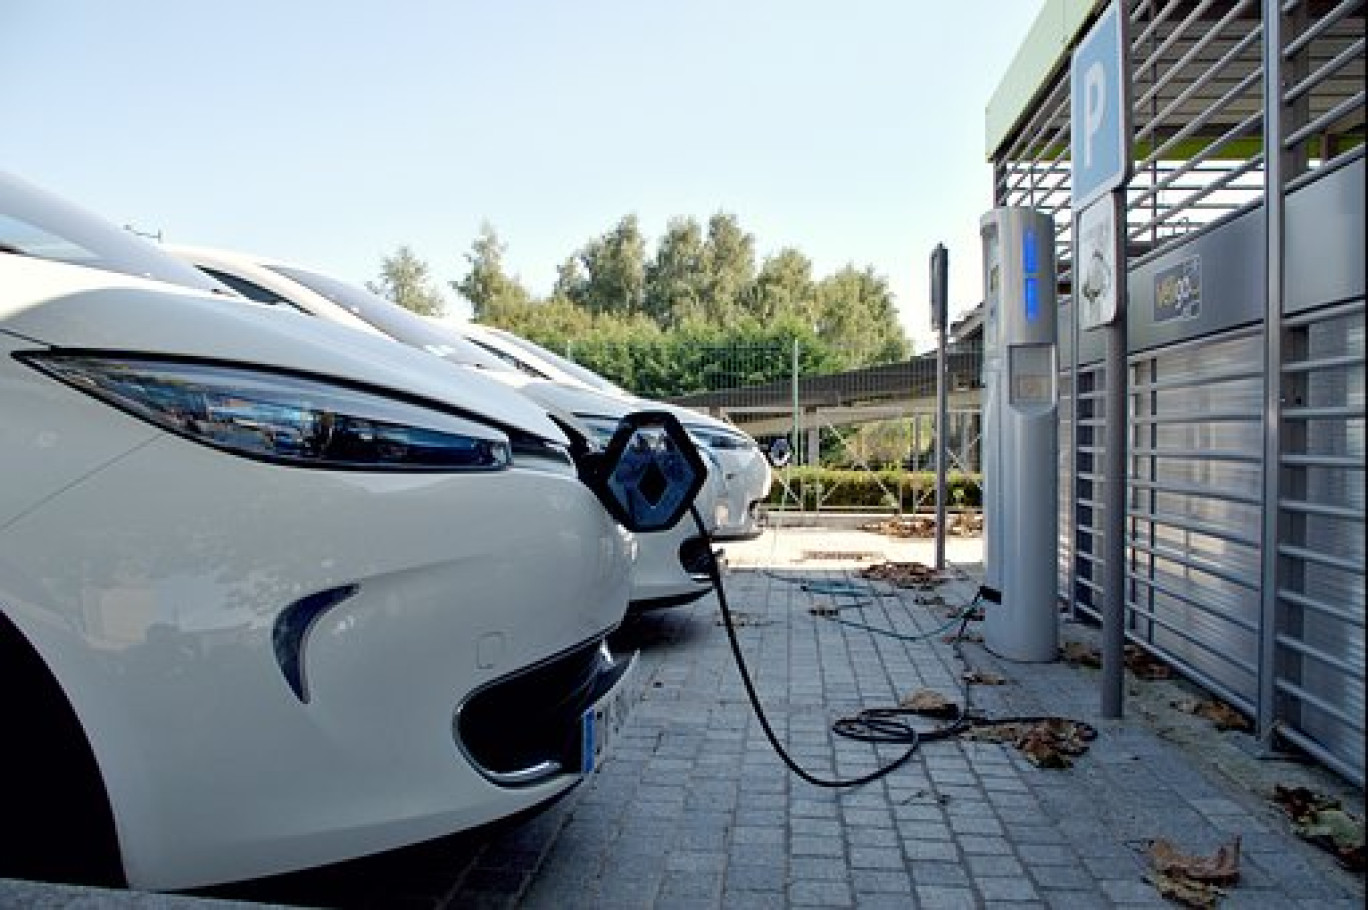 Les bornes de recharge des voitures électriques font peu à peu dans le paysage sur les lieux de travail.